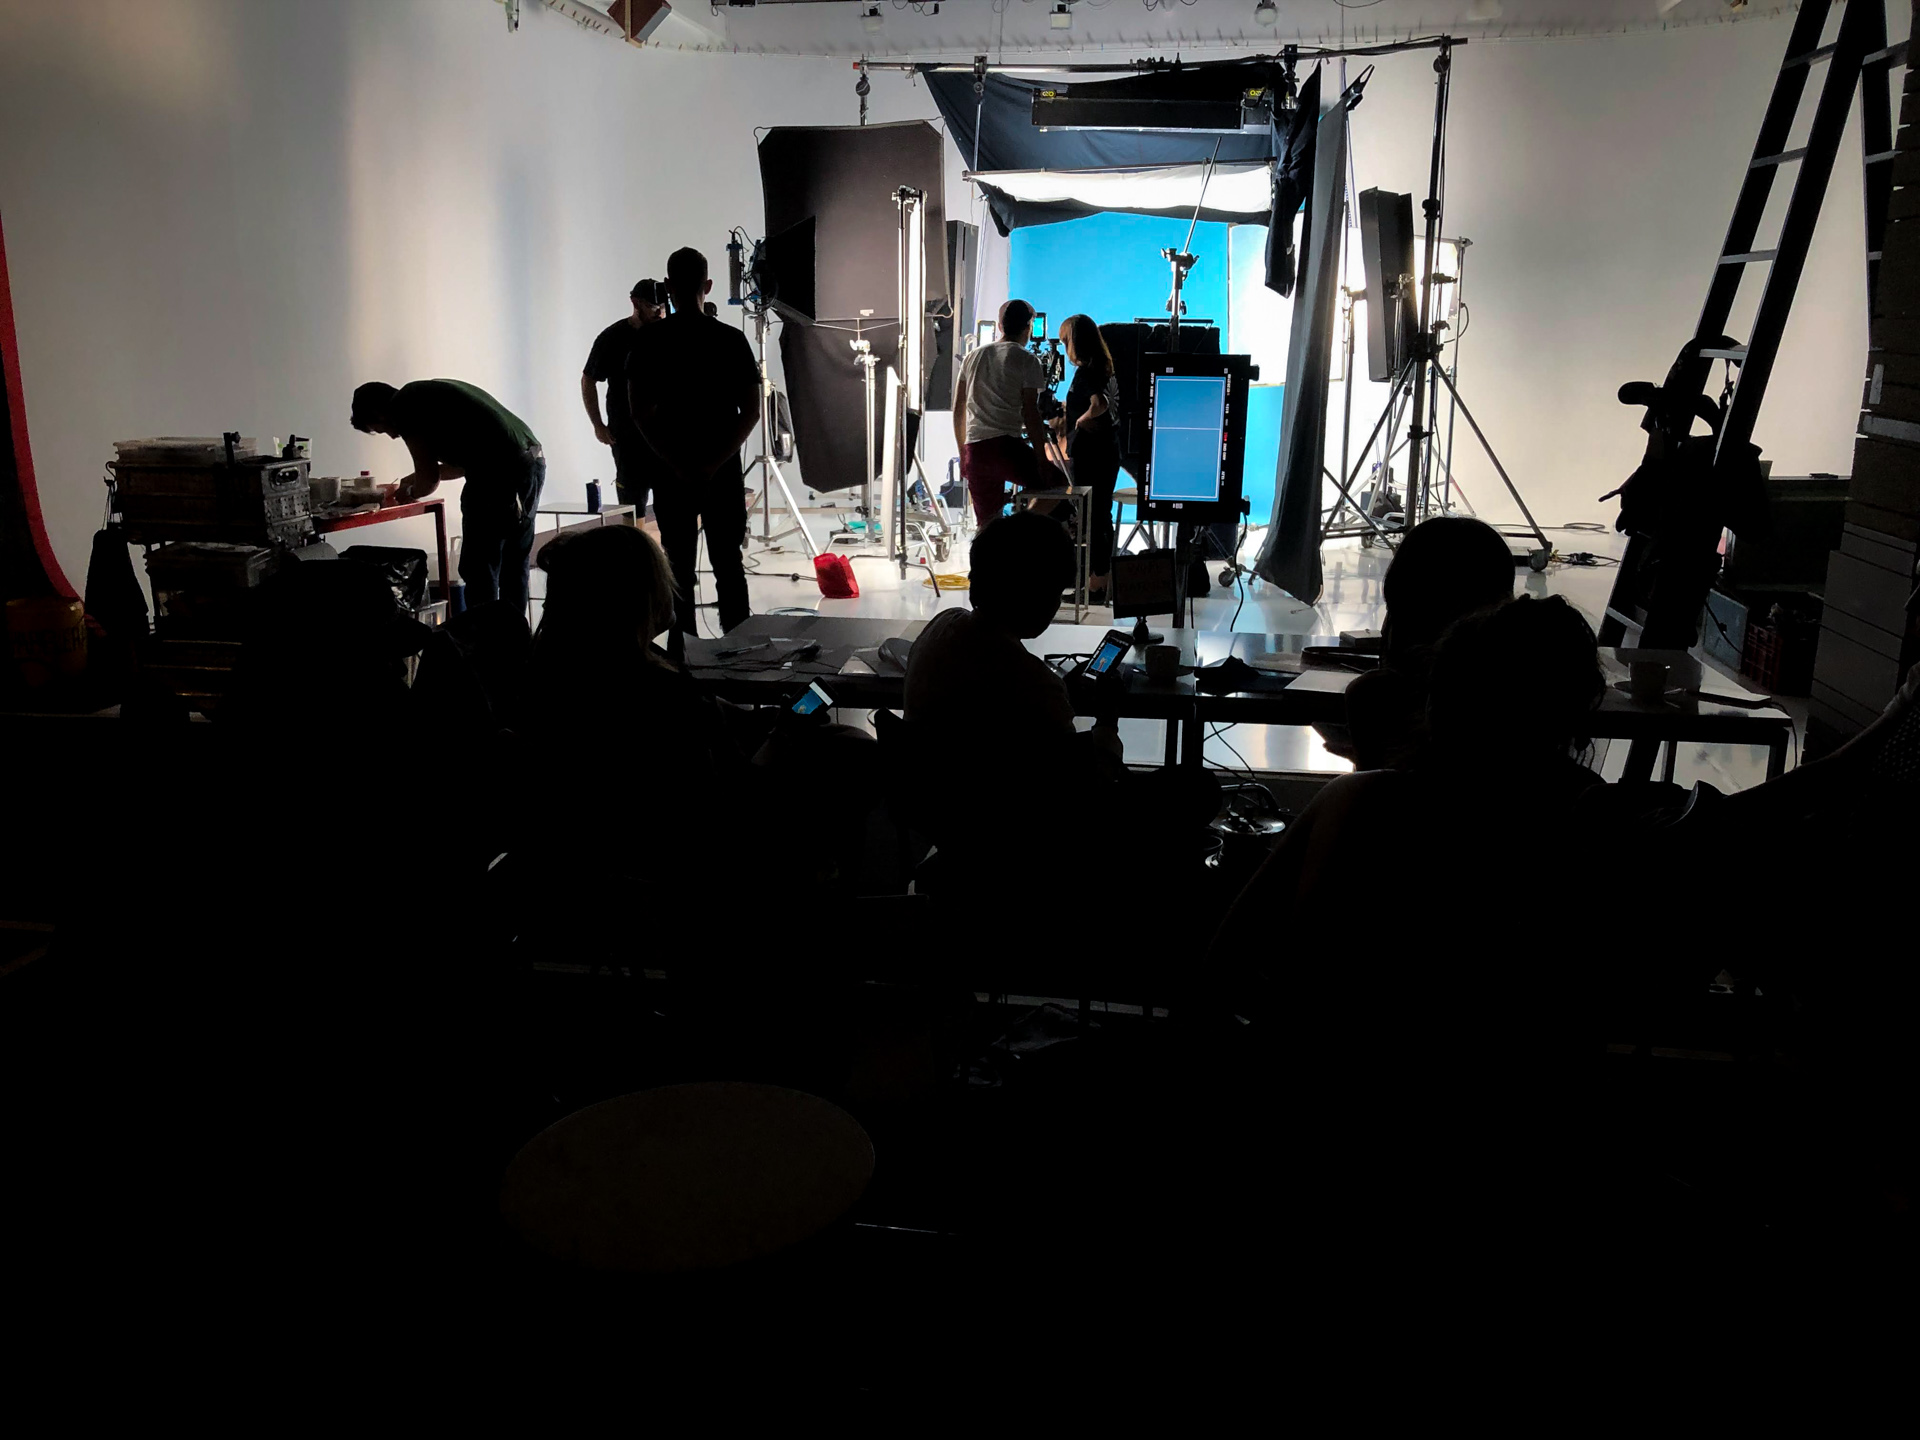 Imagen detrás de escena del estudio donde se realizaron los vídeos publicitarios para Supermercados DIA.